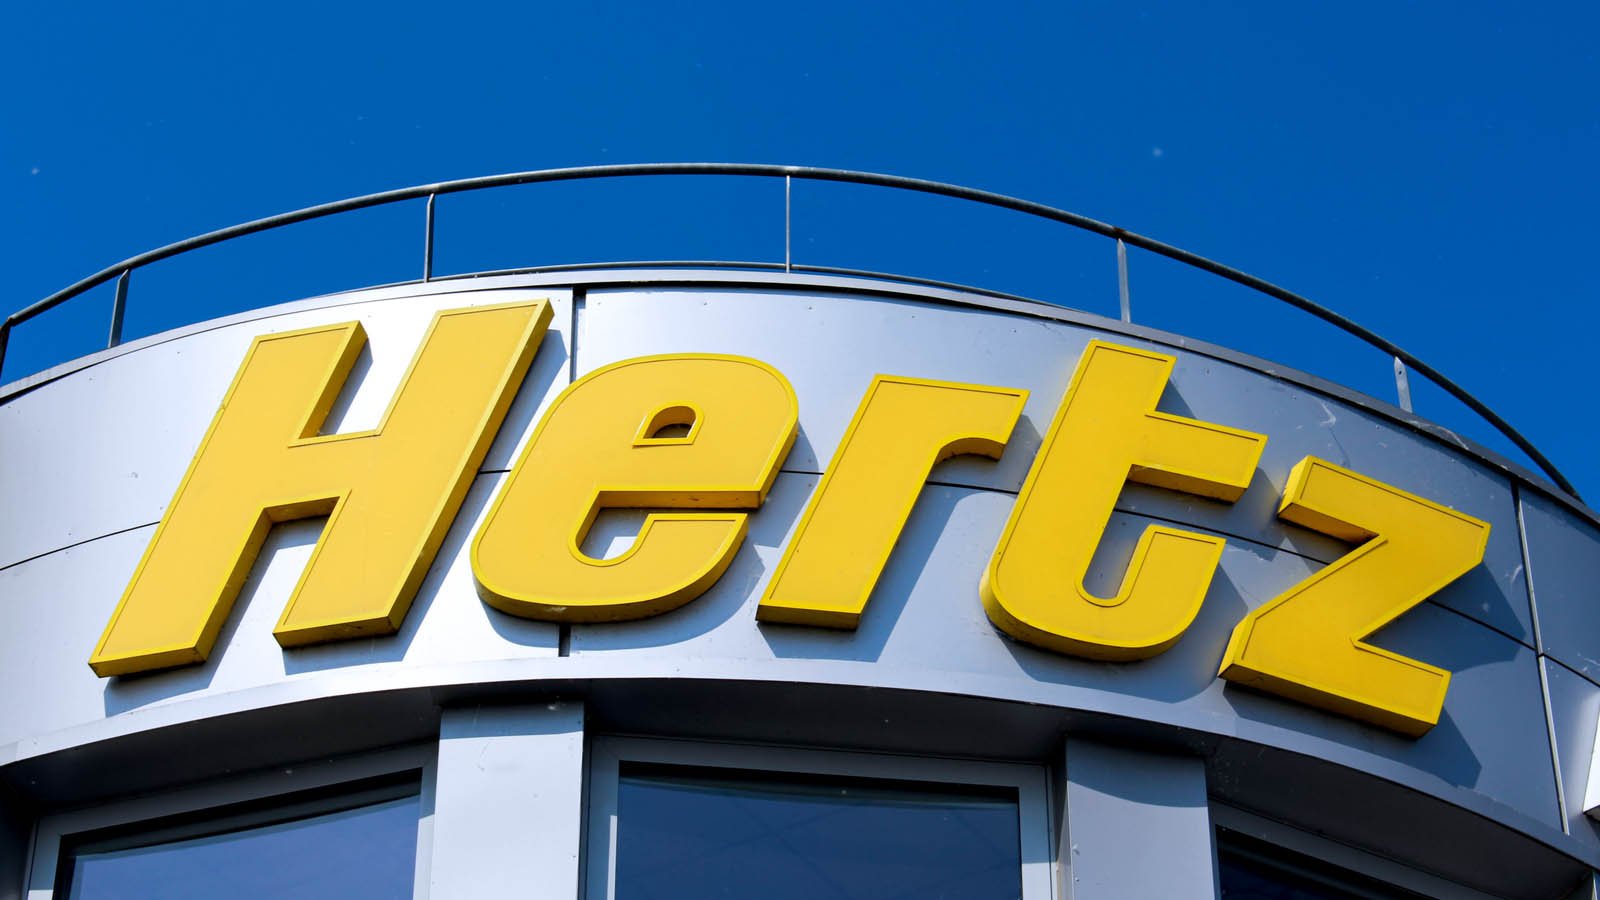 Hertz (HTZ Stock) sign in Montevrain, France on May 8, 2016.